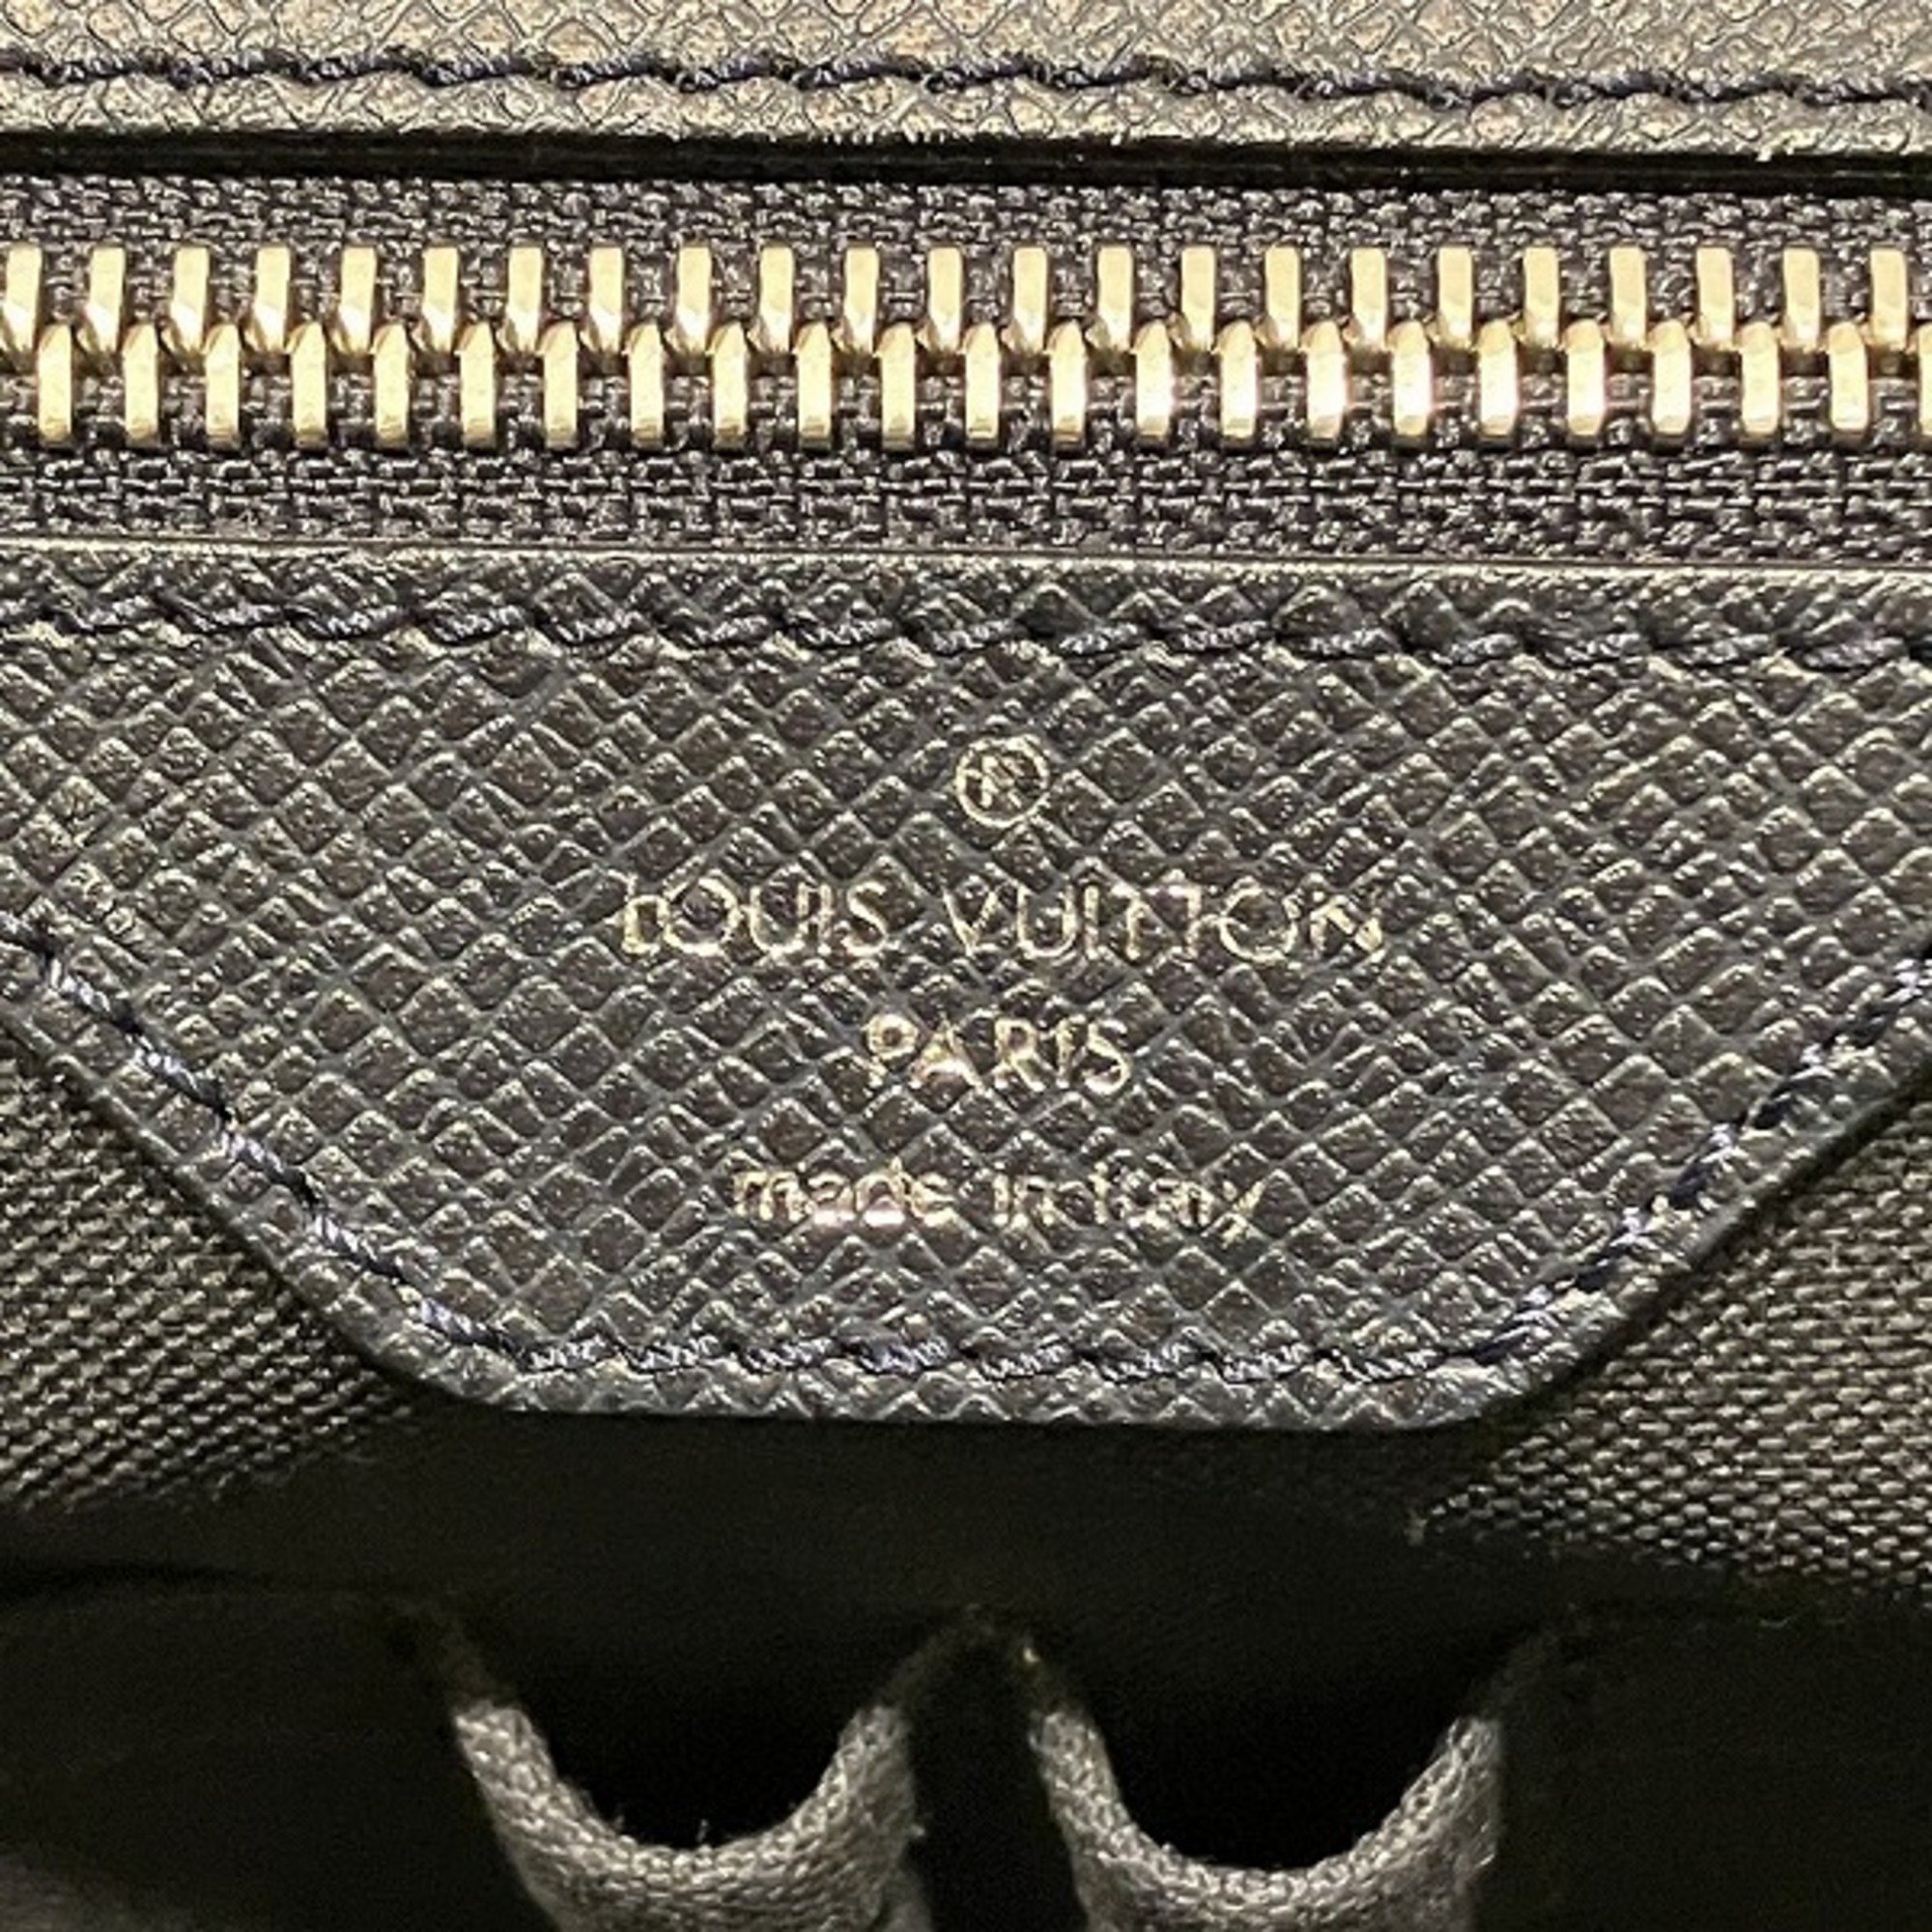 Louis Vuitton Taiga Vasili PM M32640 Bags Men's